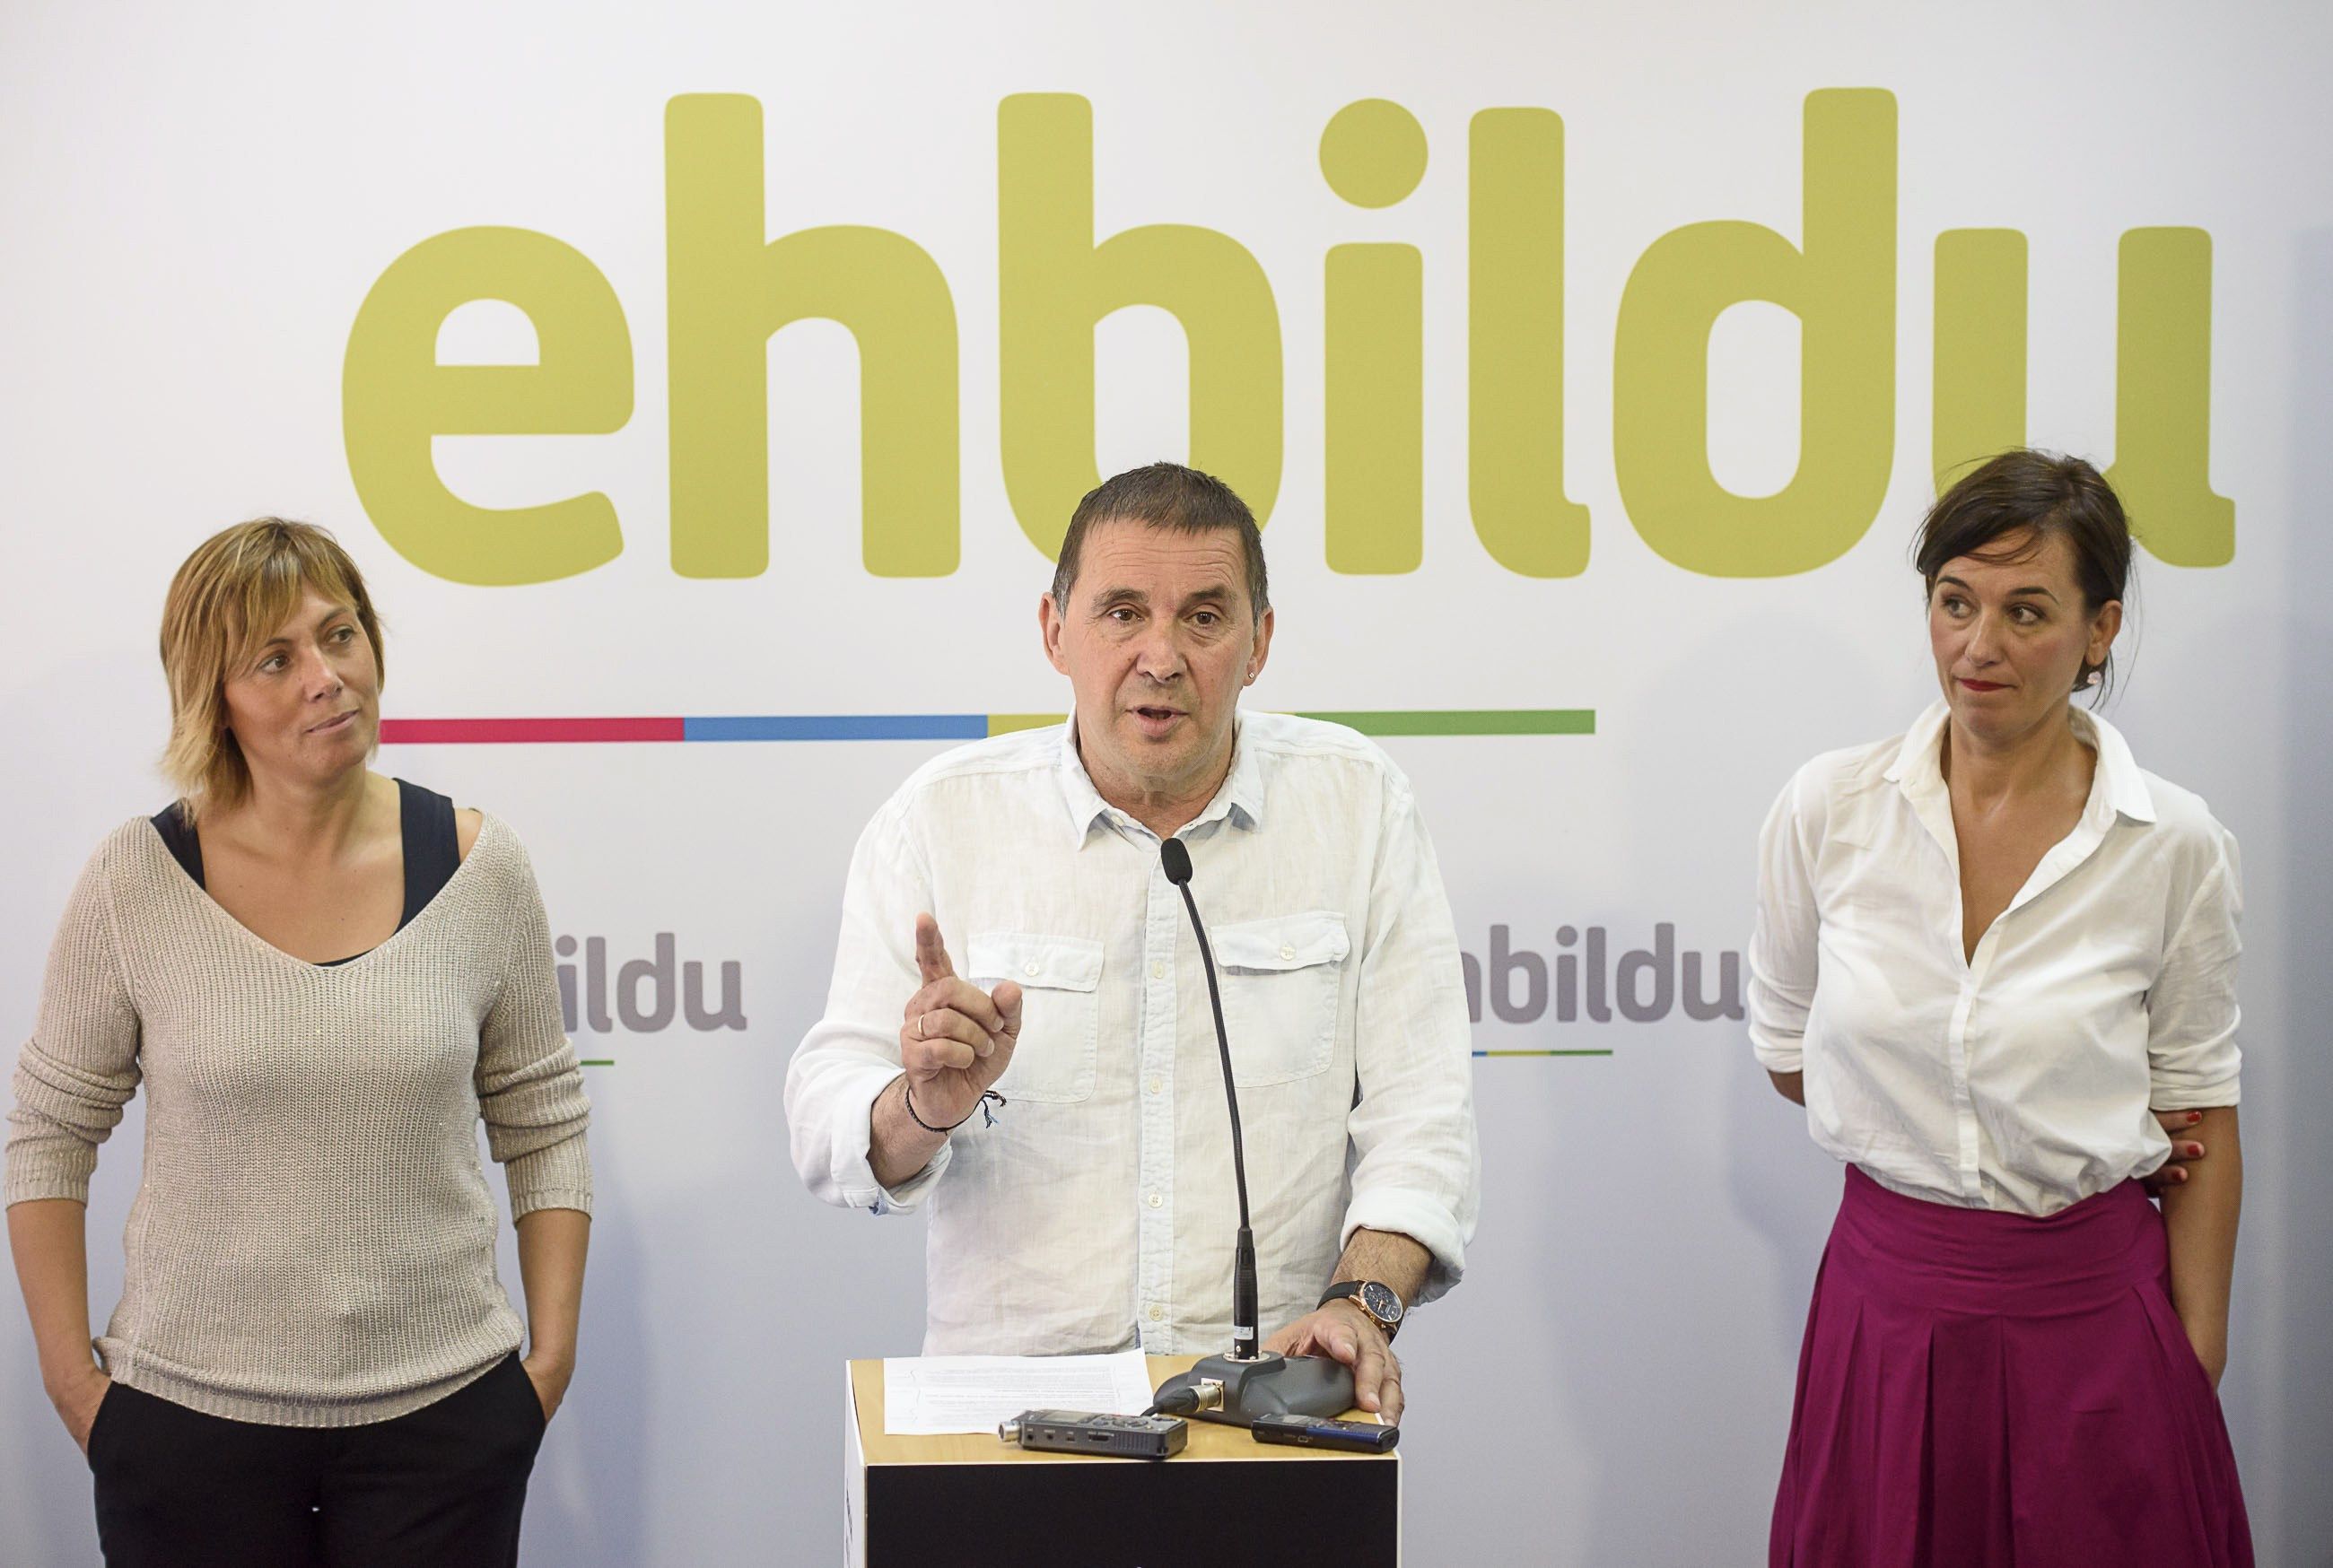 EH Bildu, per davant de Podemos en unes eleccions que guanyaria el PNB